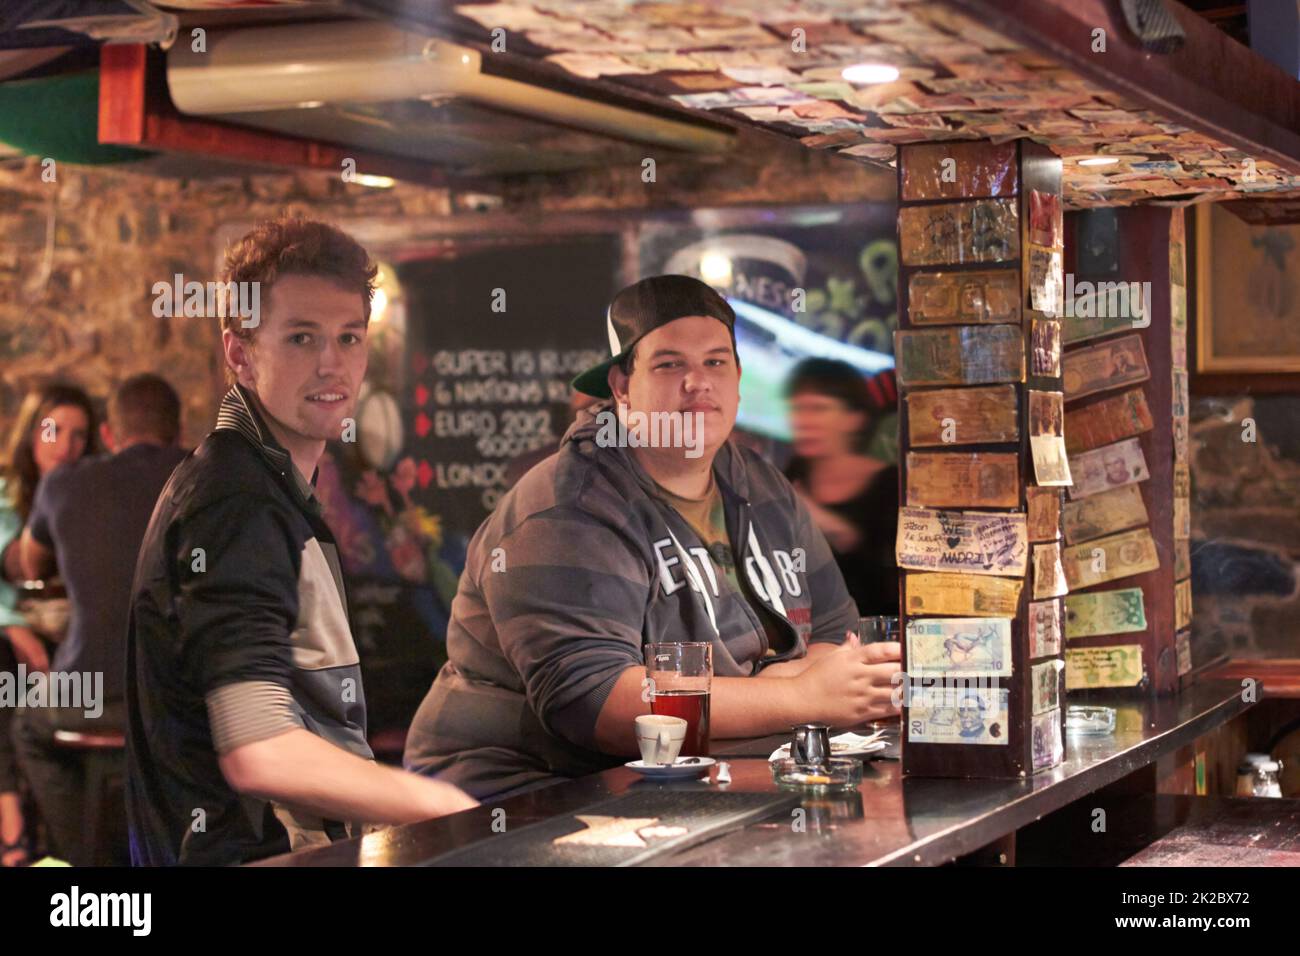 Ein Pint mit seinem kumpel. Zwei Freunde trinken an der lokalen Bar. Stockfoto